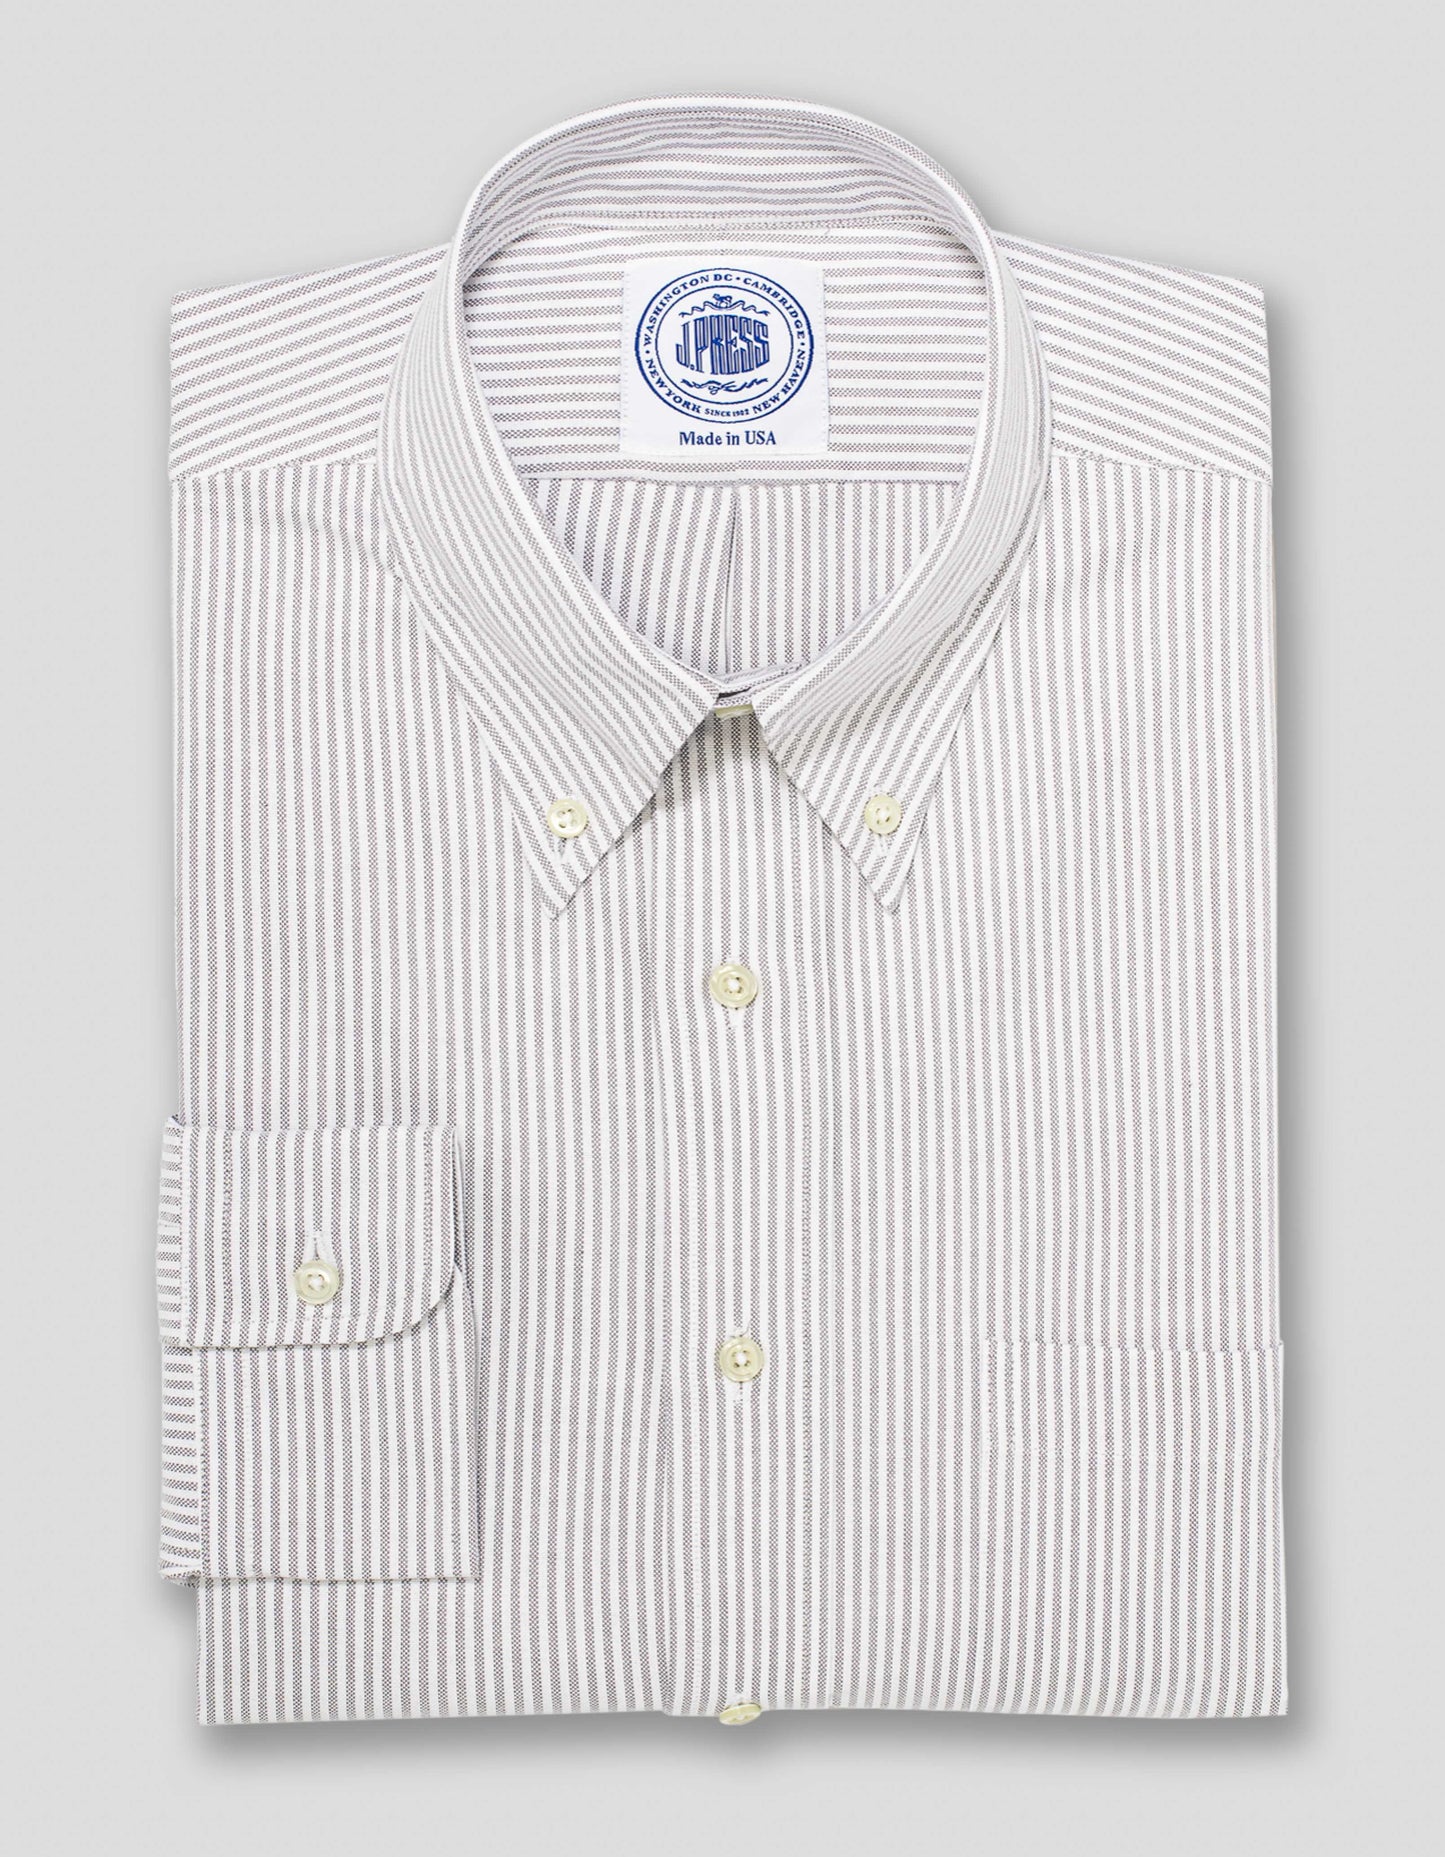 GREY/WHITE OXFORD DRESS SHIRT